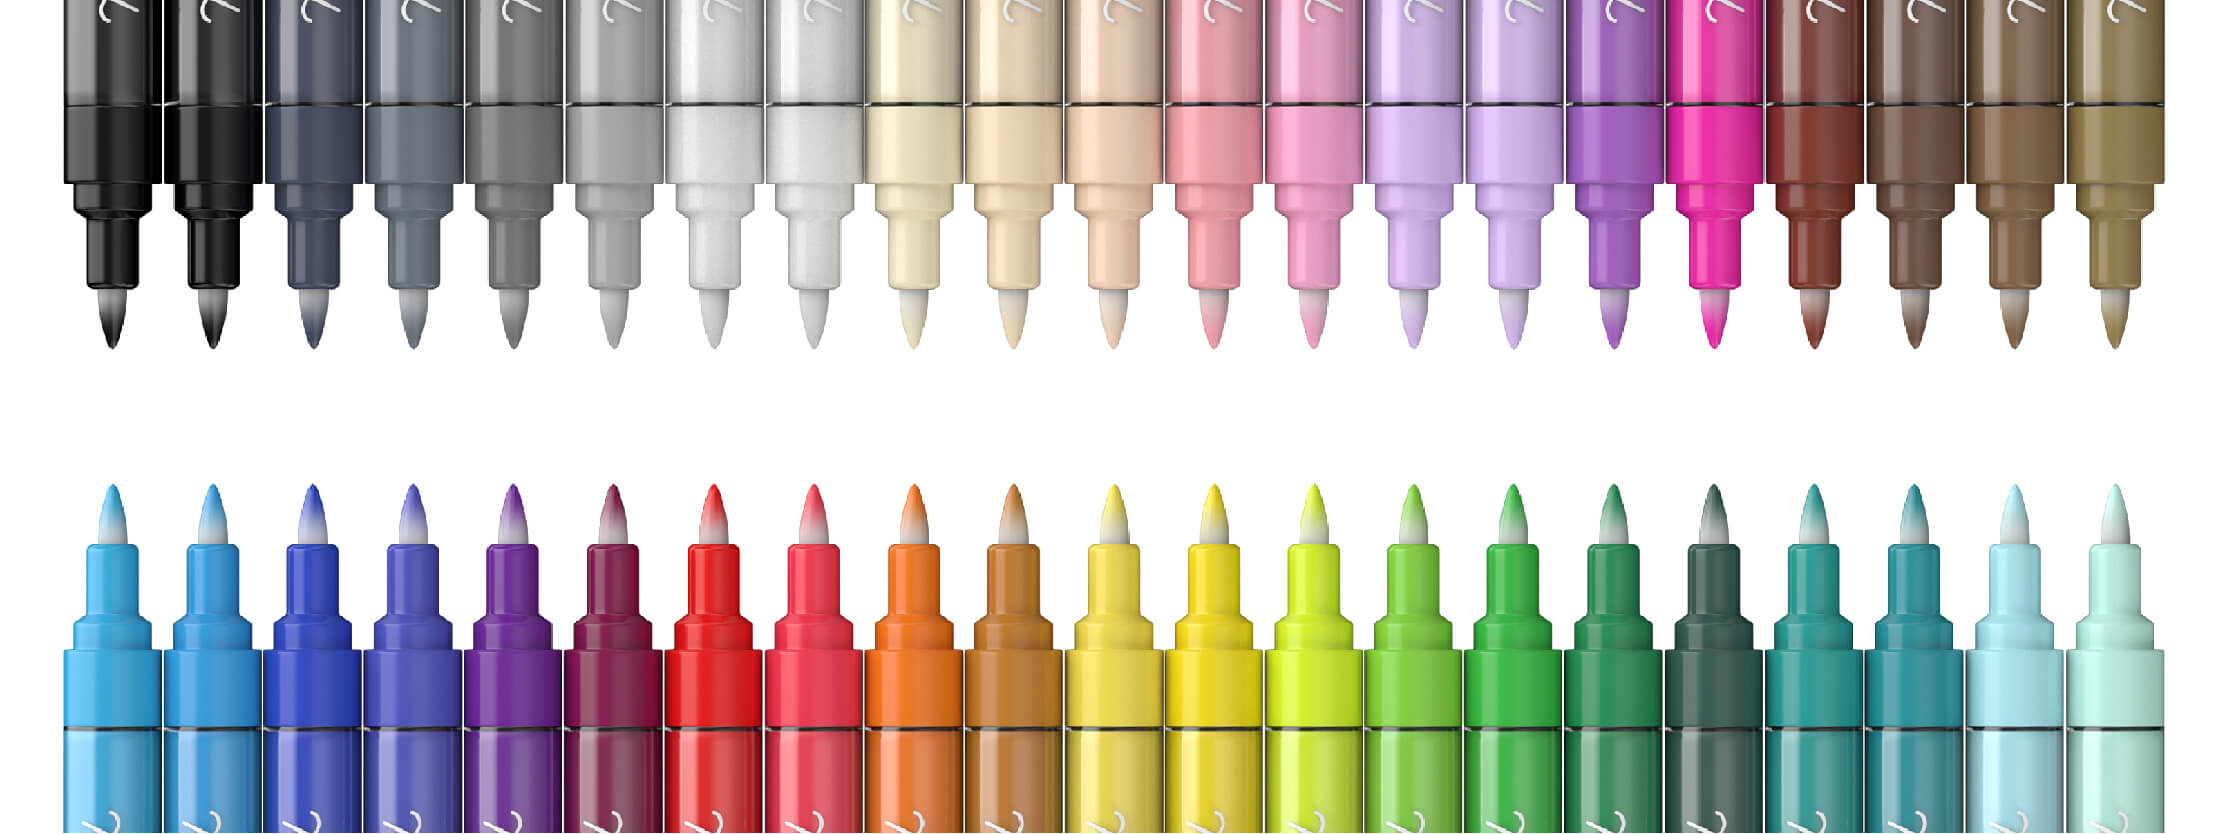 Mini Fibre Tip Pens (Per 8 Packs) Art Supplies